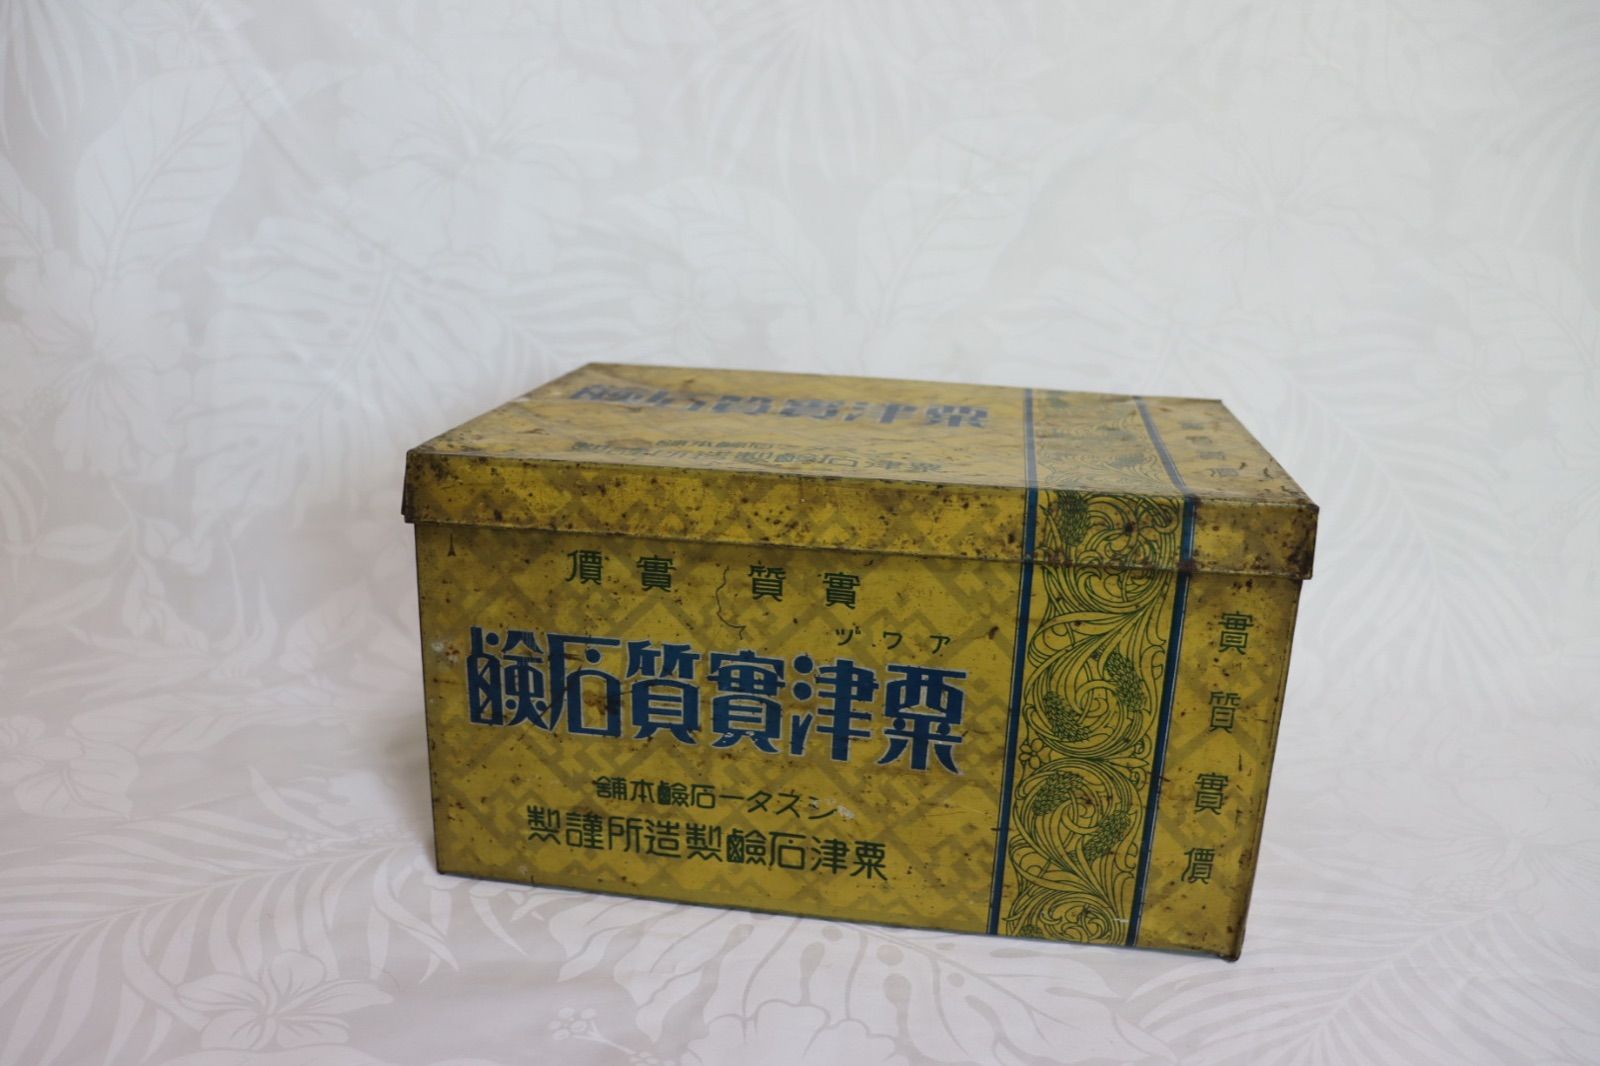 粟津石鹸製造所ティン缶-0